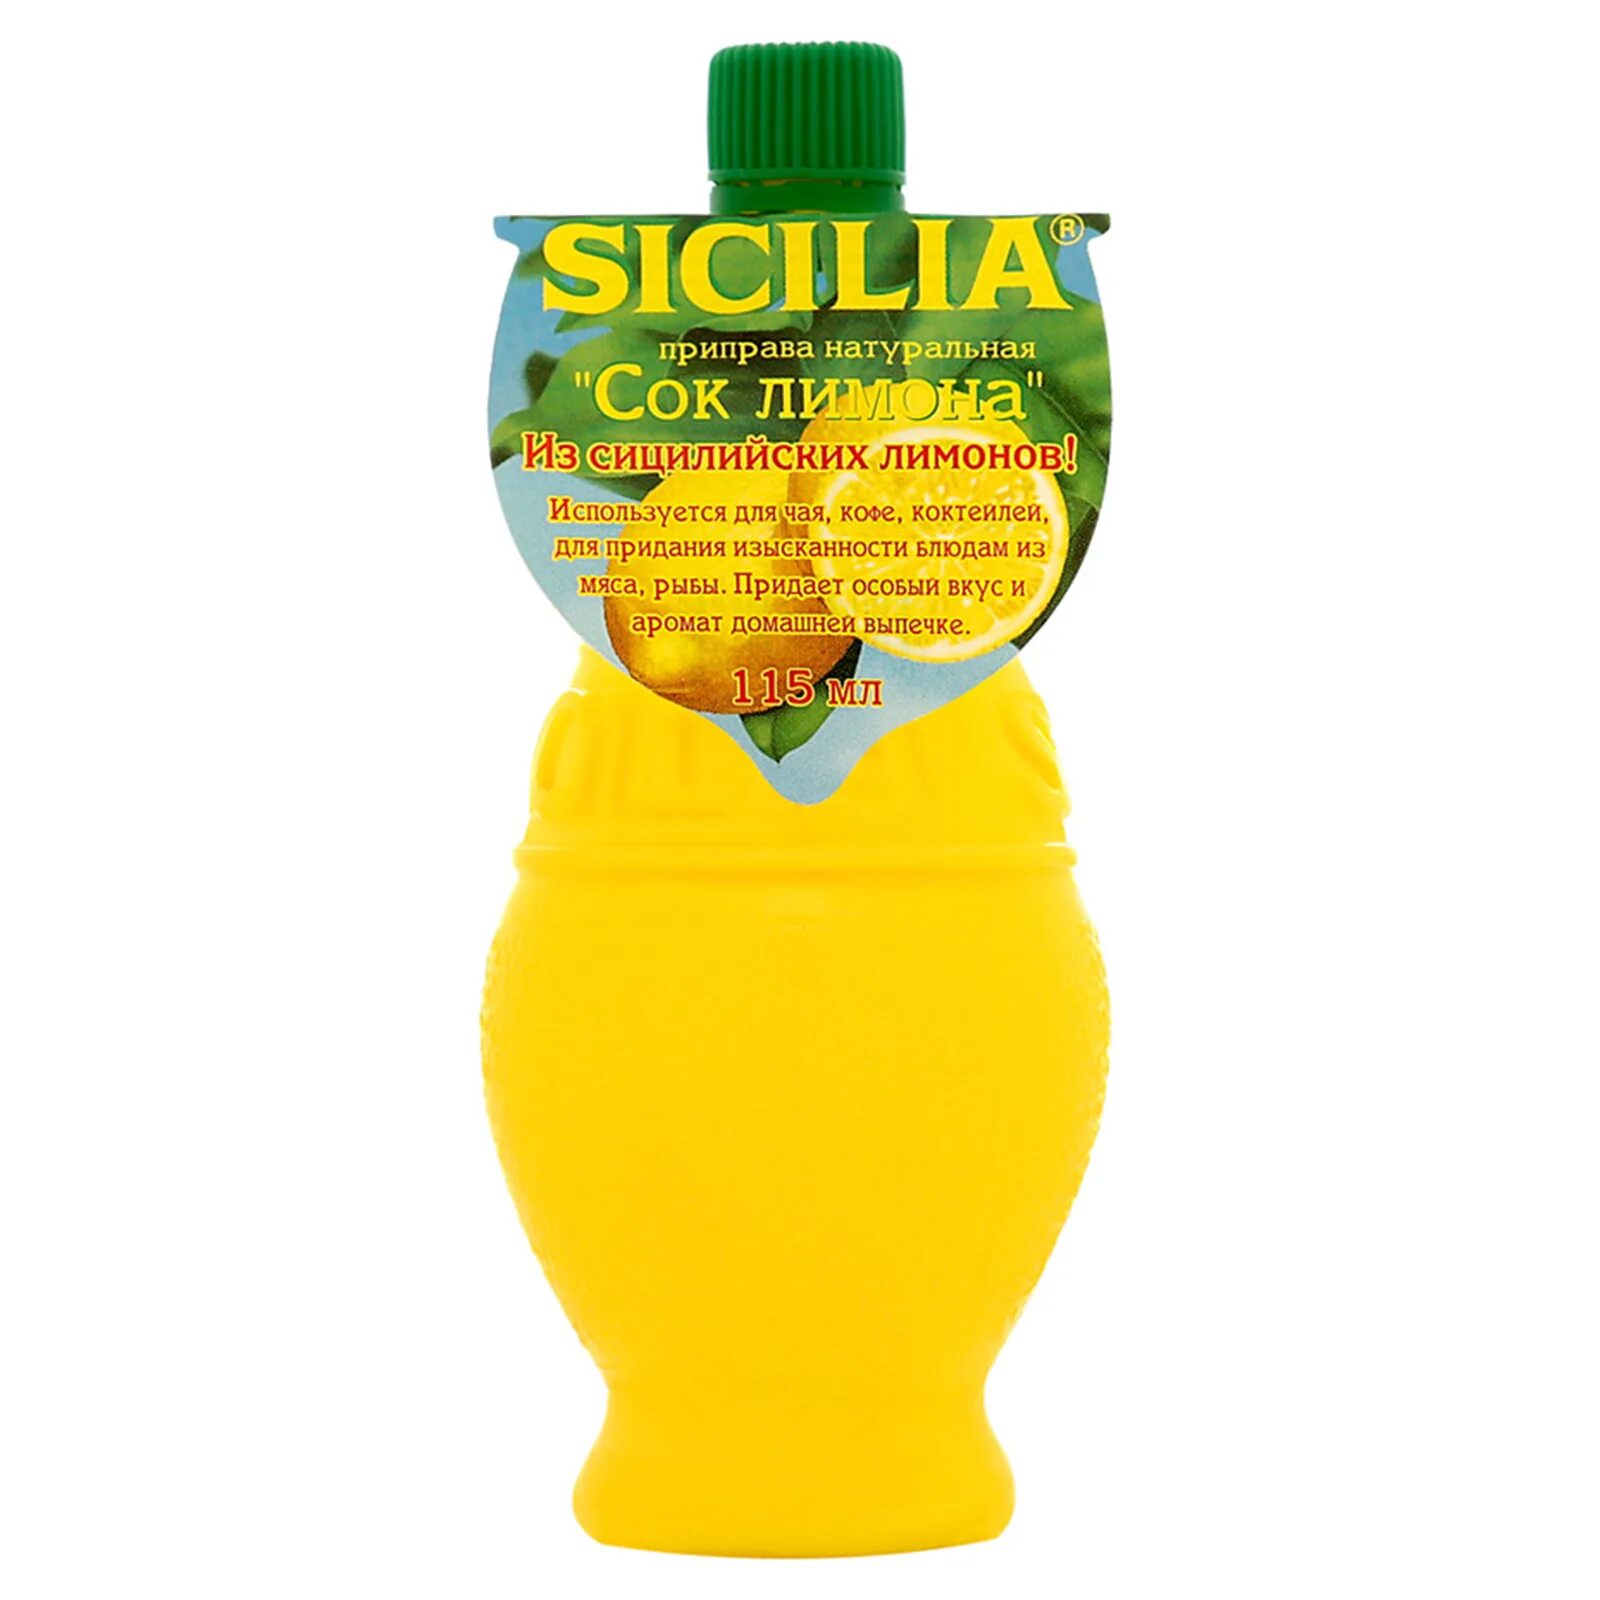 Приправа Sicilia сок лимона, 115мл. Сок лимона Сицилия 115 мл. Sicilia приправа натуральная сок лимона 115 г. Сок лимона какой